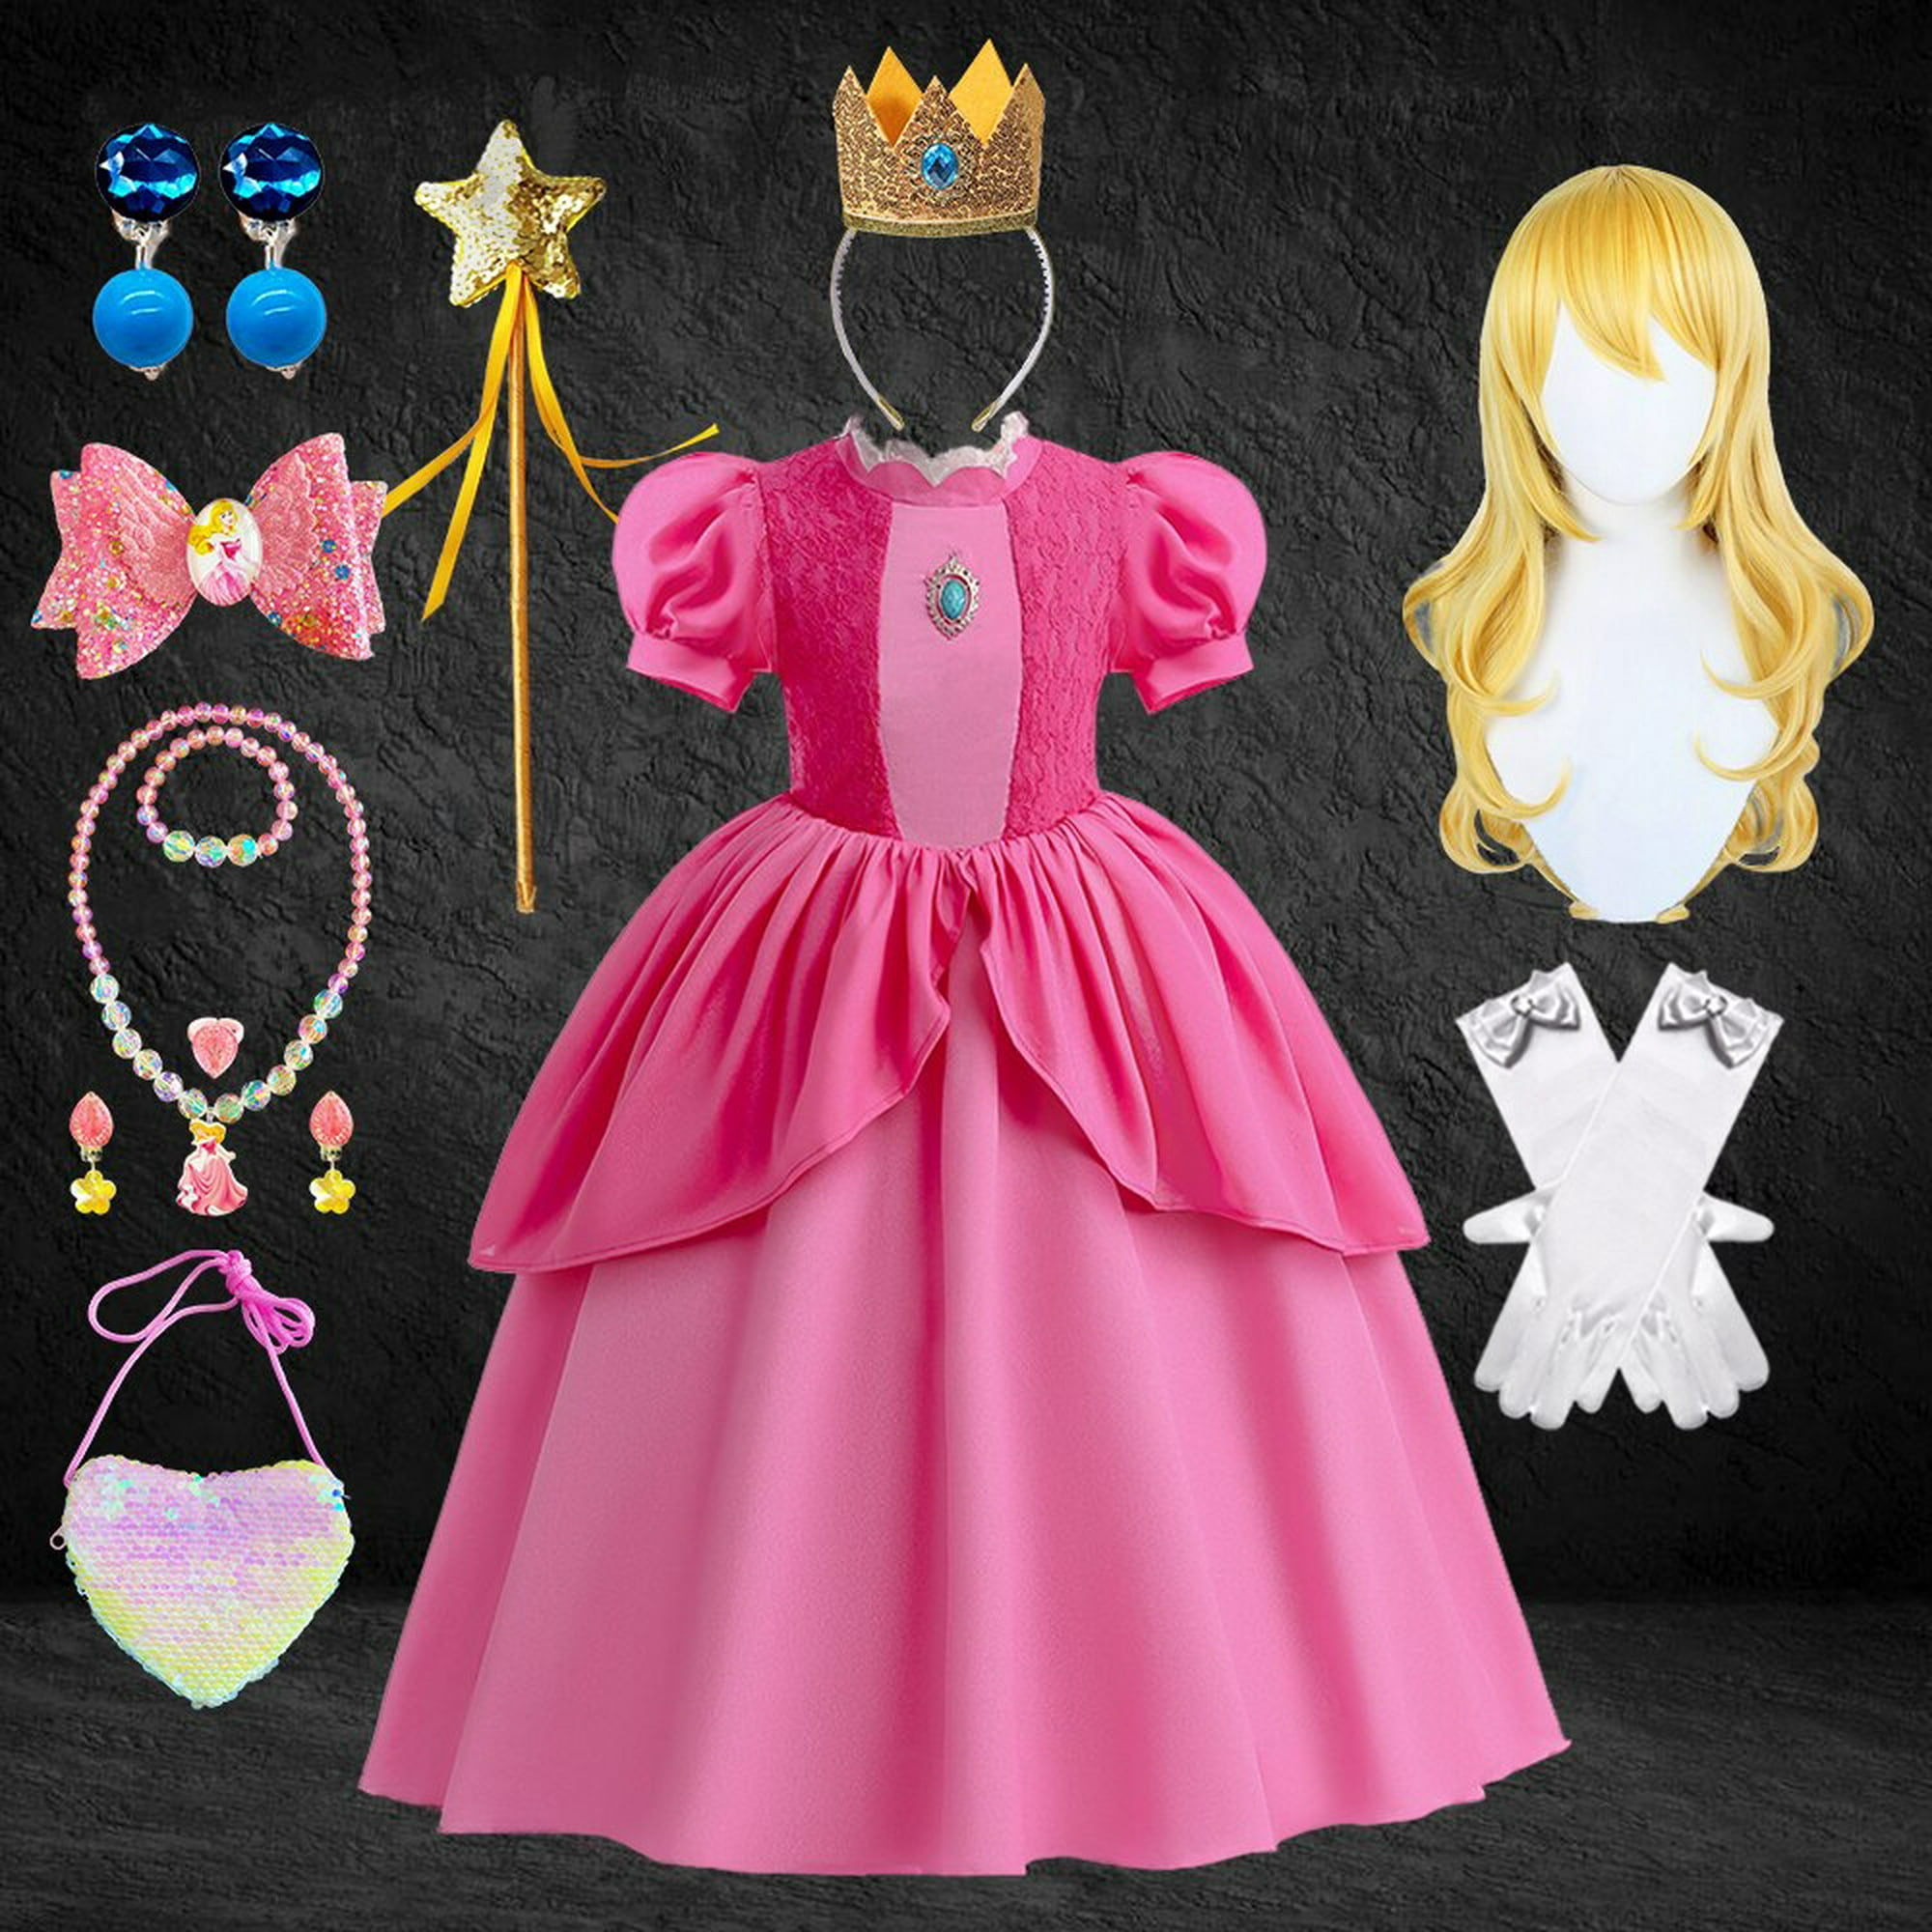 Dzyoleize Vestido de verão infantil Peach Princess Fantasia de festa de  aniversário de manga curta rosa para meninas (as2, age, 3_years, 4_years,  regular, Rosa)